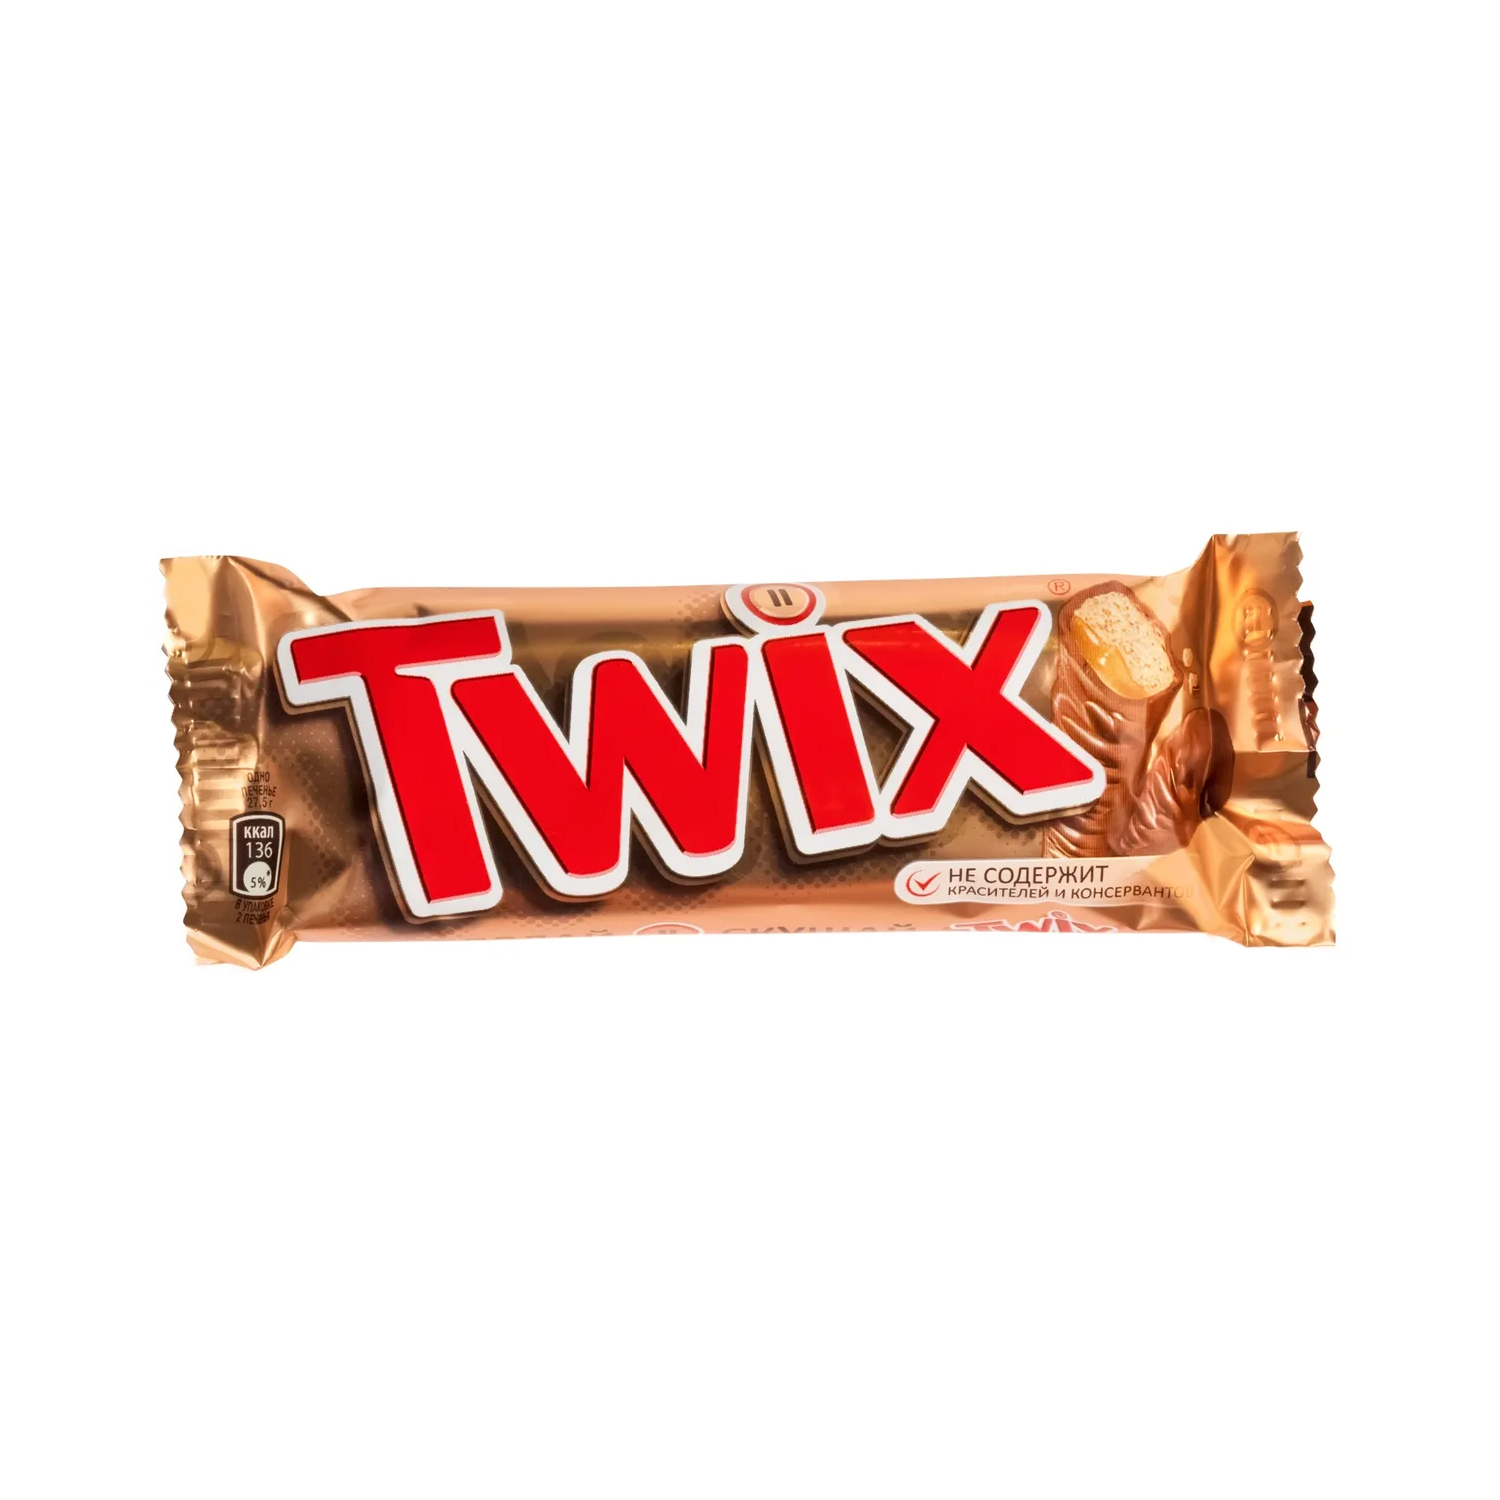 Шоколадный батончик Twix, 55 г шоколадный батончик duplo чокнат 26 г